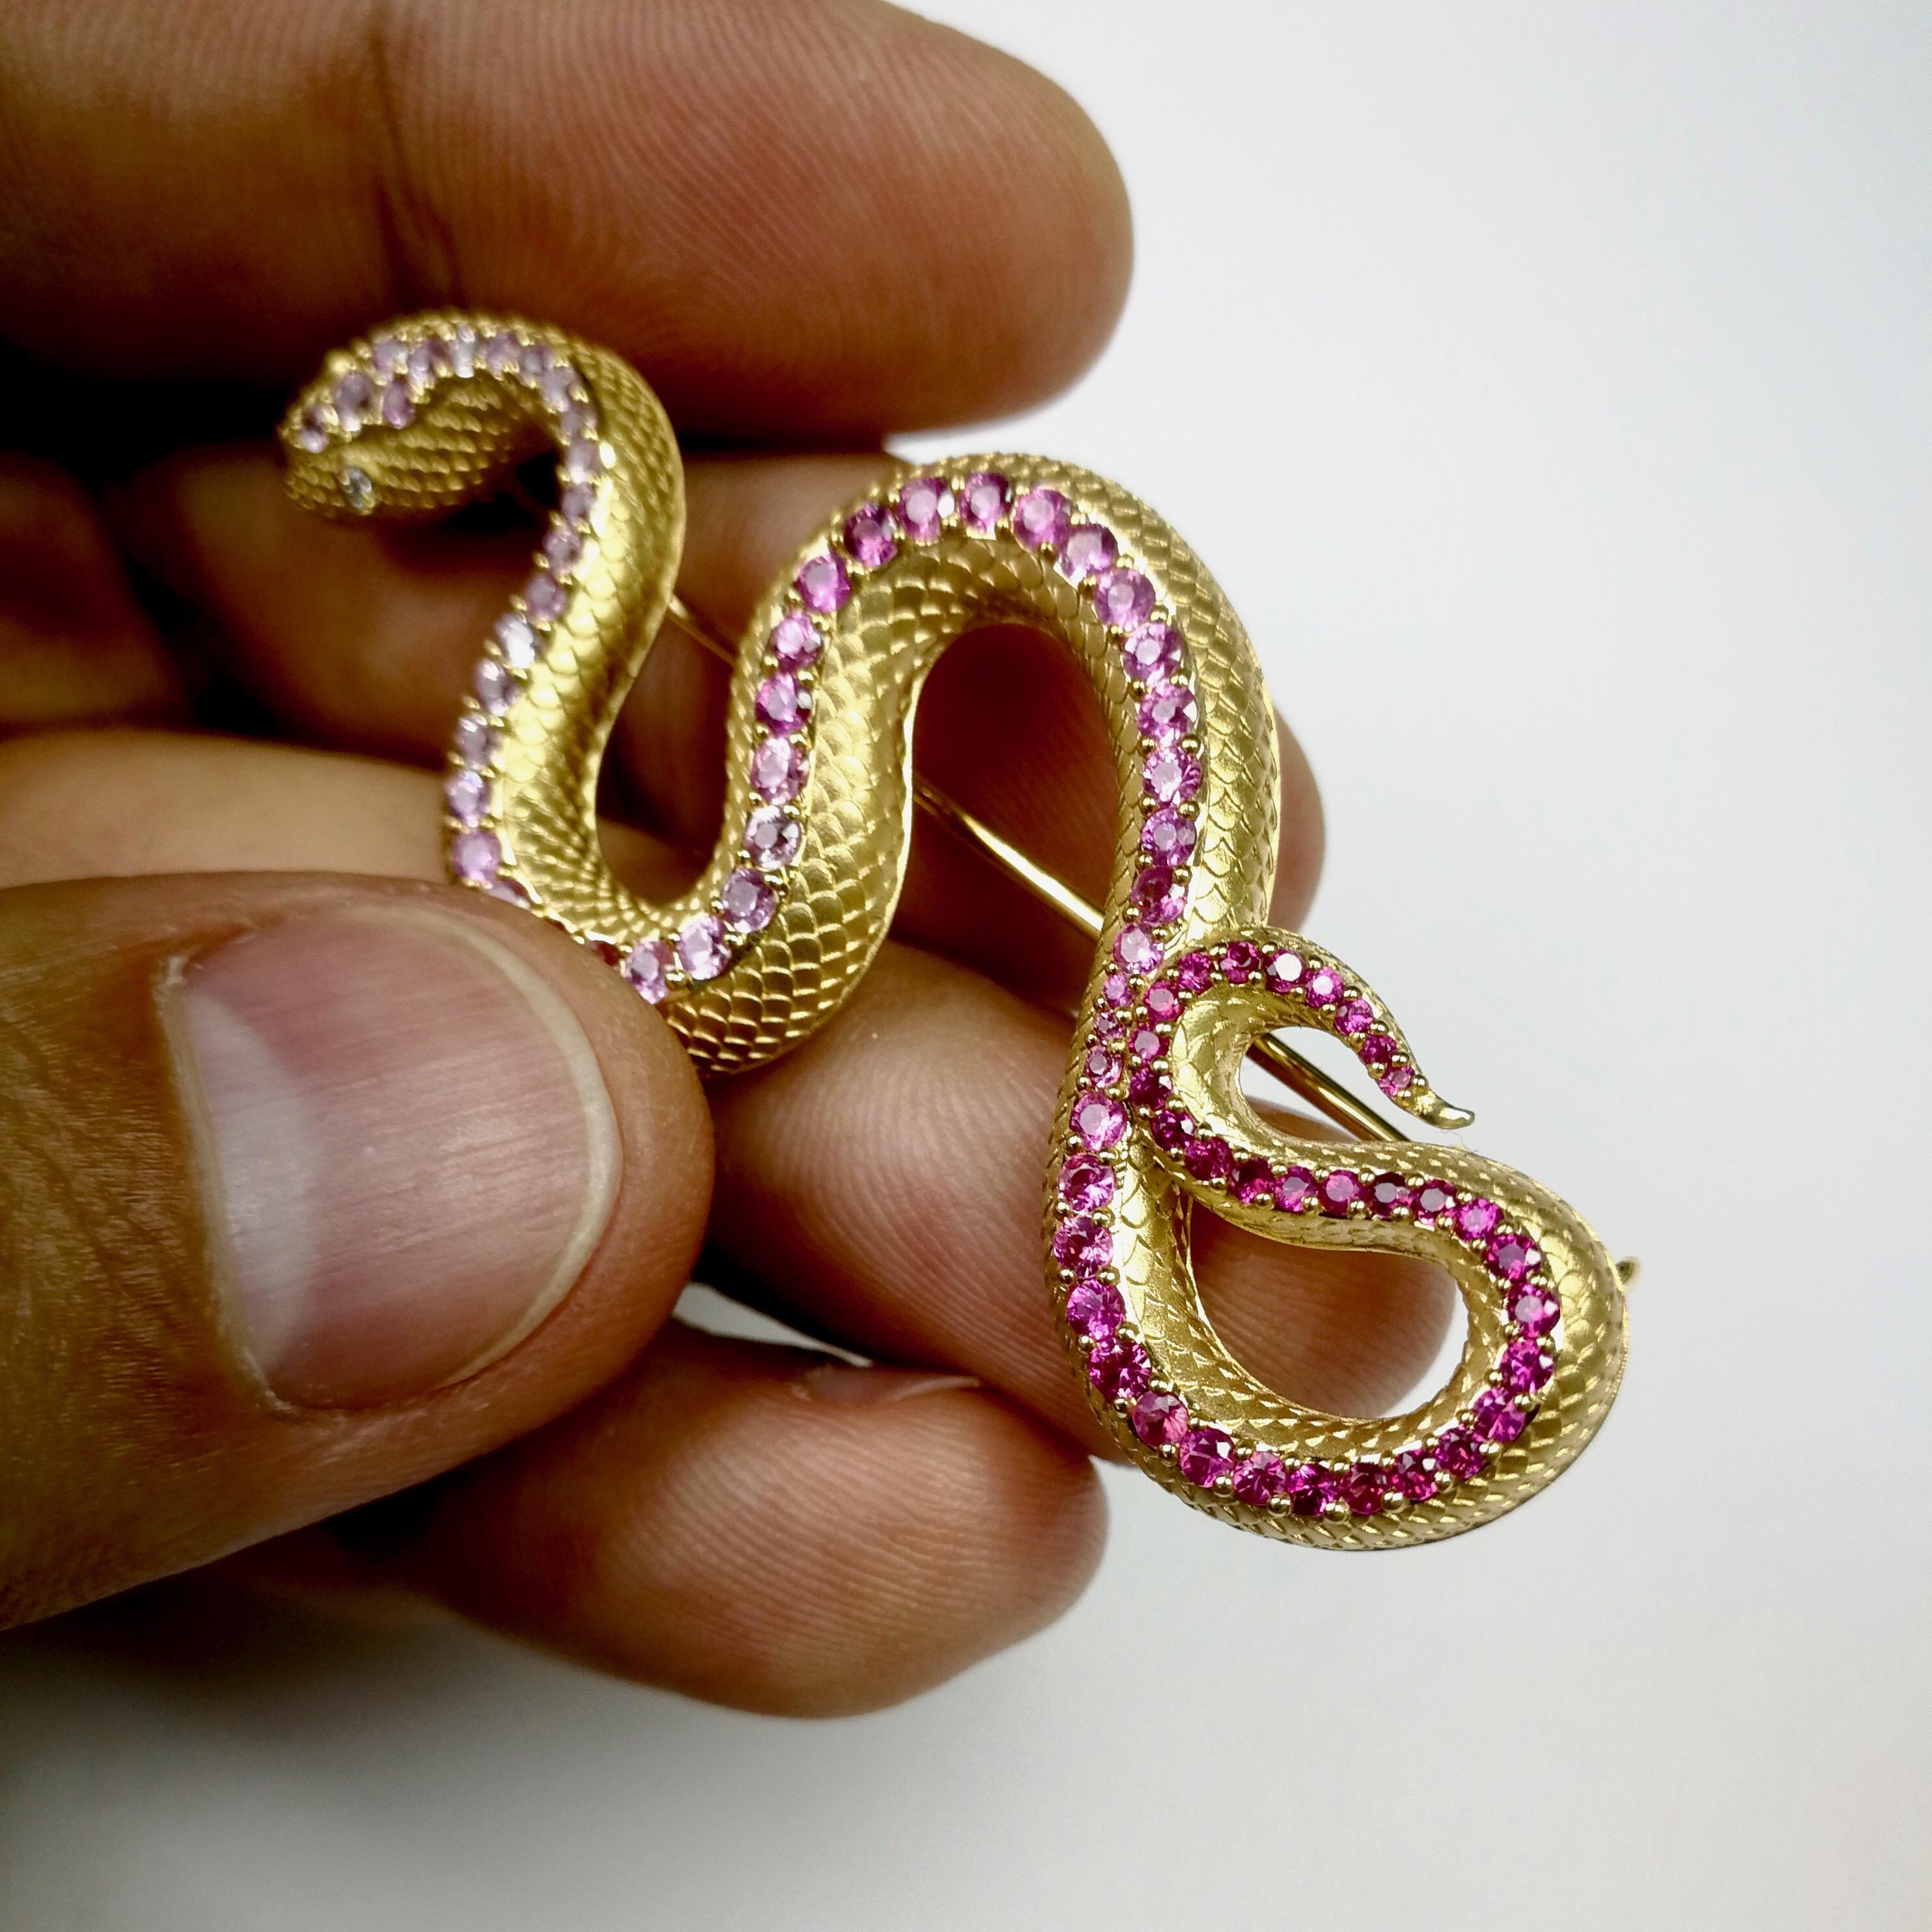 Saphir rose Diamants Or jaune 18 carats Bague serpent Boucles d'oreilles Broche Suite

Il suffit de jeter un coup d'œil à cette suite très détaillée, qui distribue toute la sagesse du serpent. Une gradation des couleurs soigneusement sélectionnée,